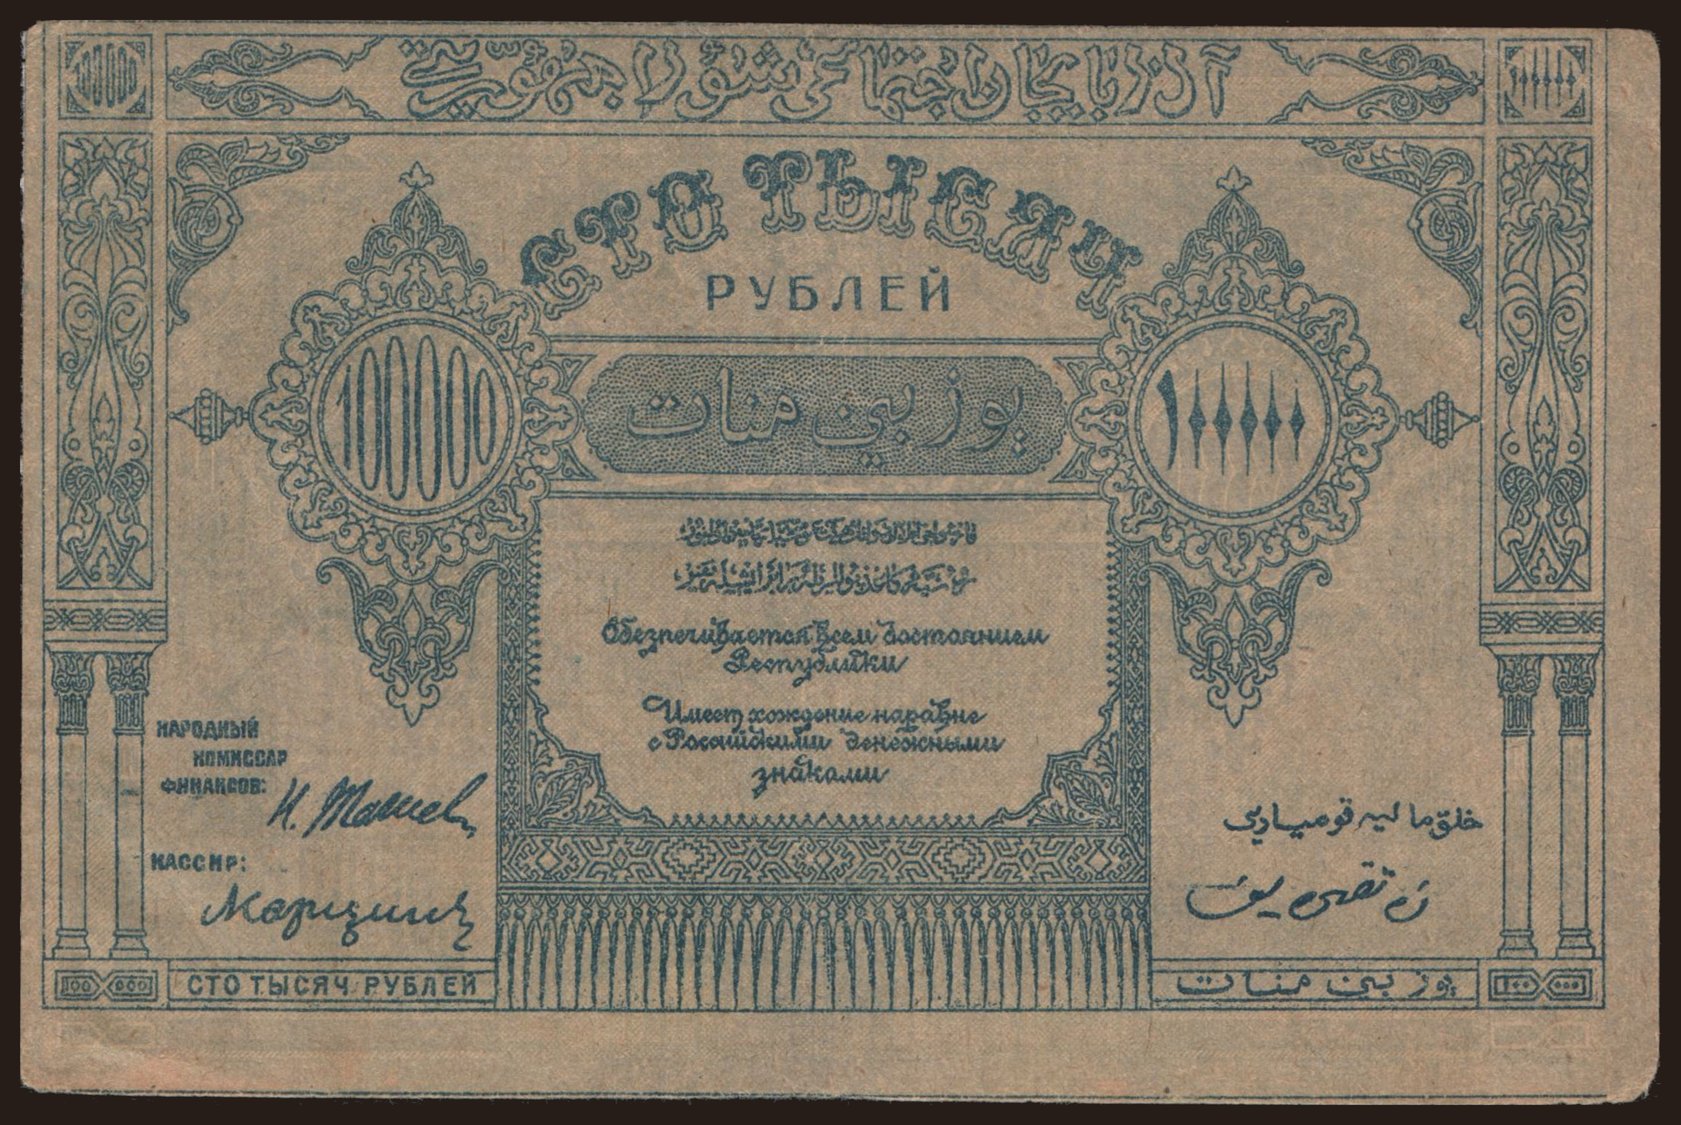 ASSR, 100.000 rubel, 1922